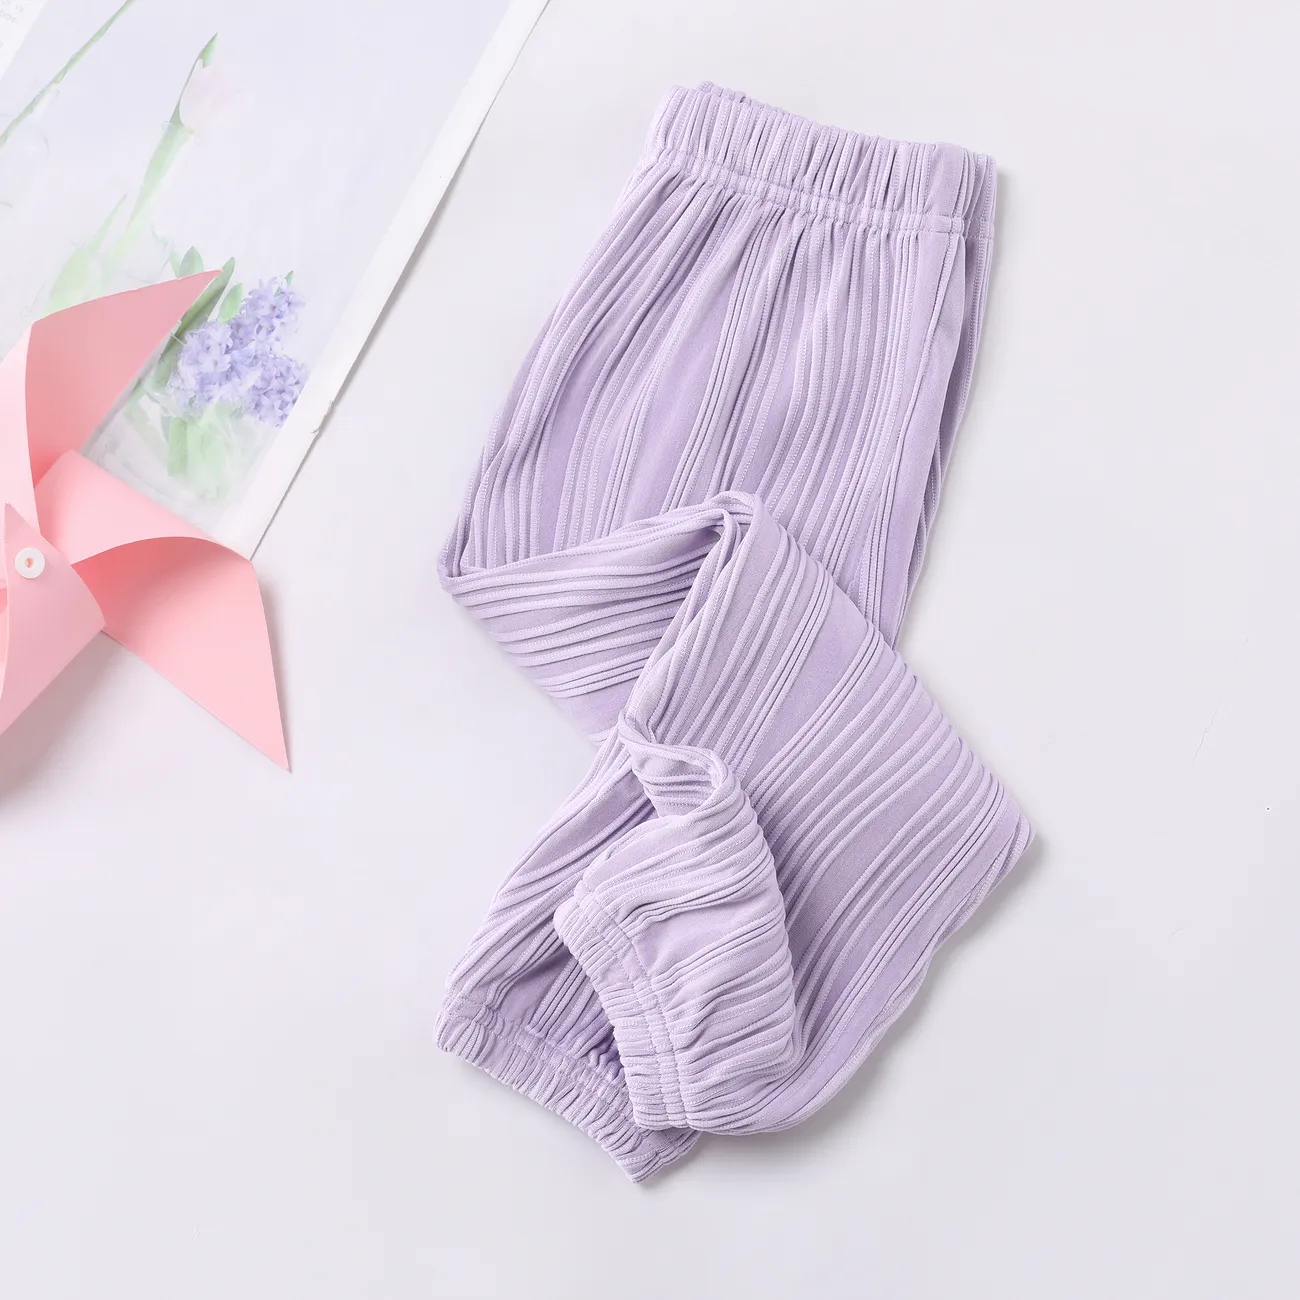 Pantaloni per l'aria condizionata Cool Wave della bambina Viola big image 1